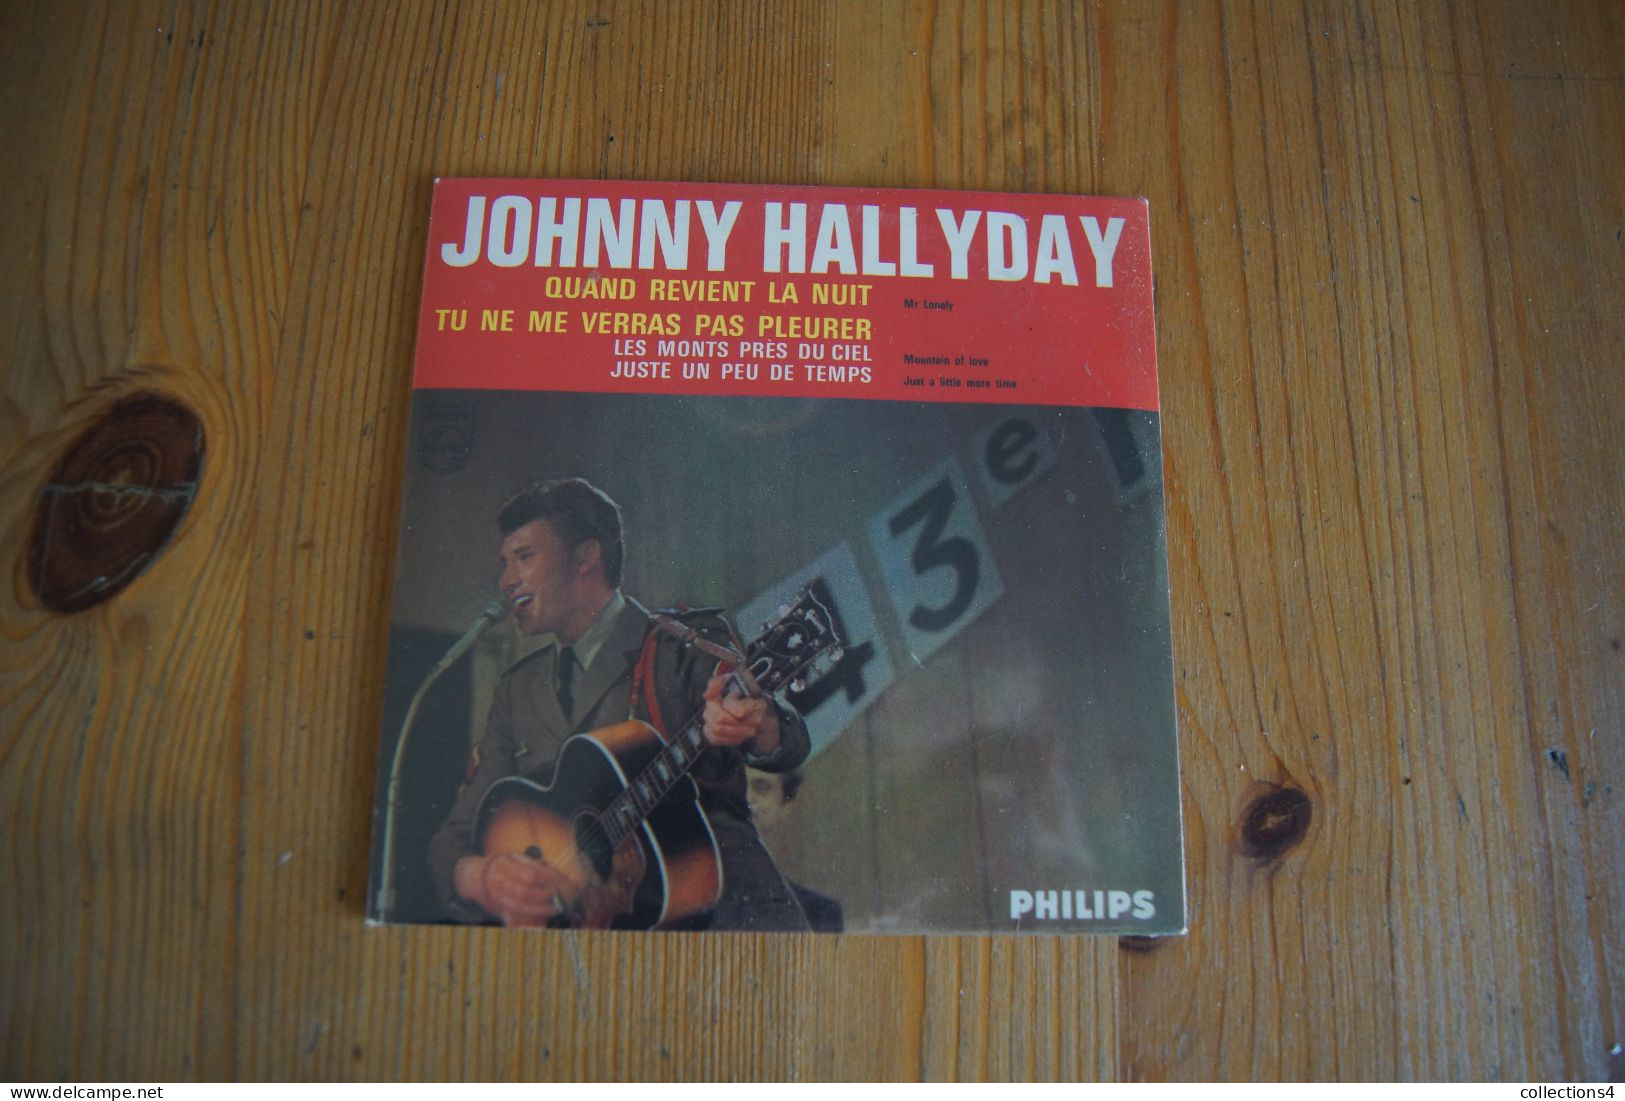 JOHNNY HALLYDAY QUAND REVIENT LA NUIT CD NEUF SCELLE REEDITION DU EP DE 1965 - Rock